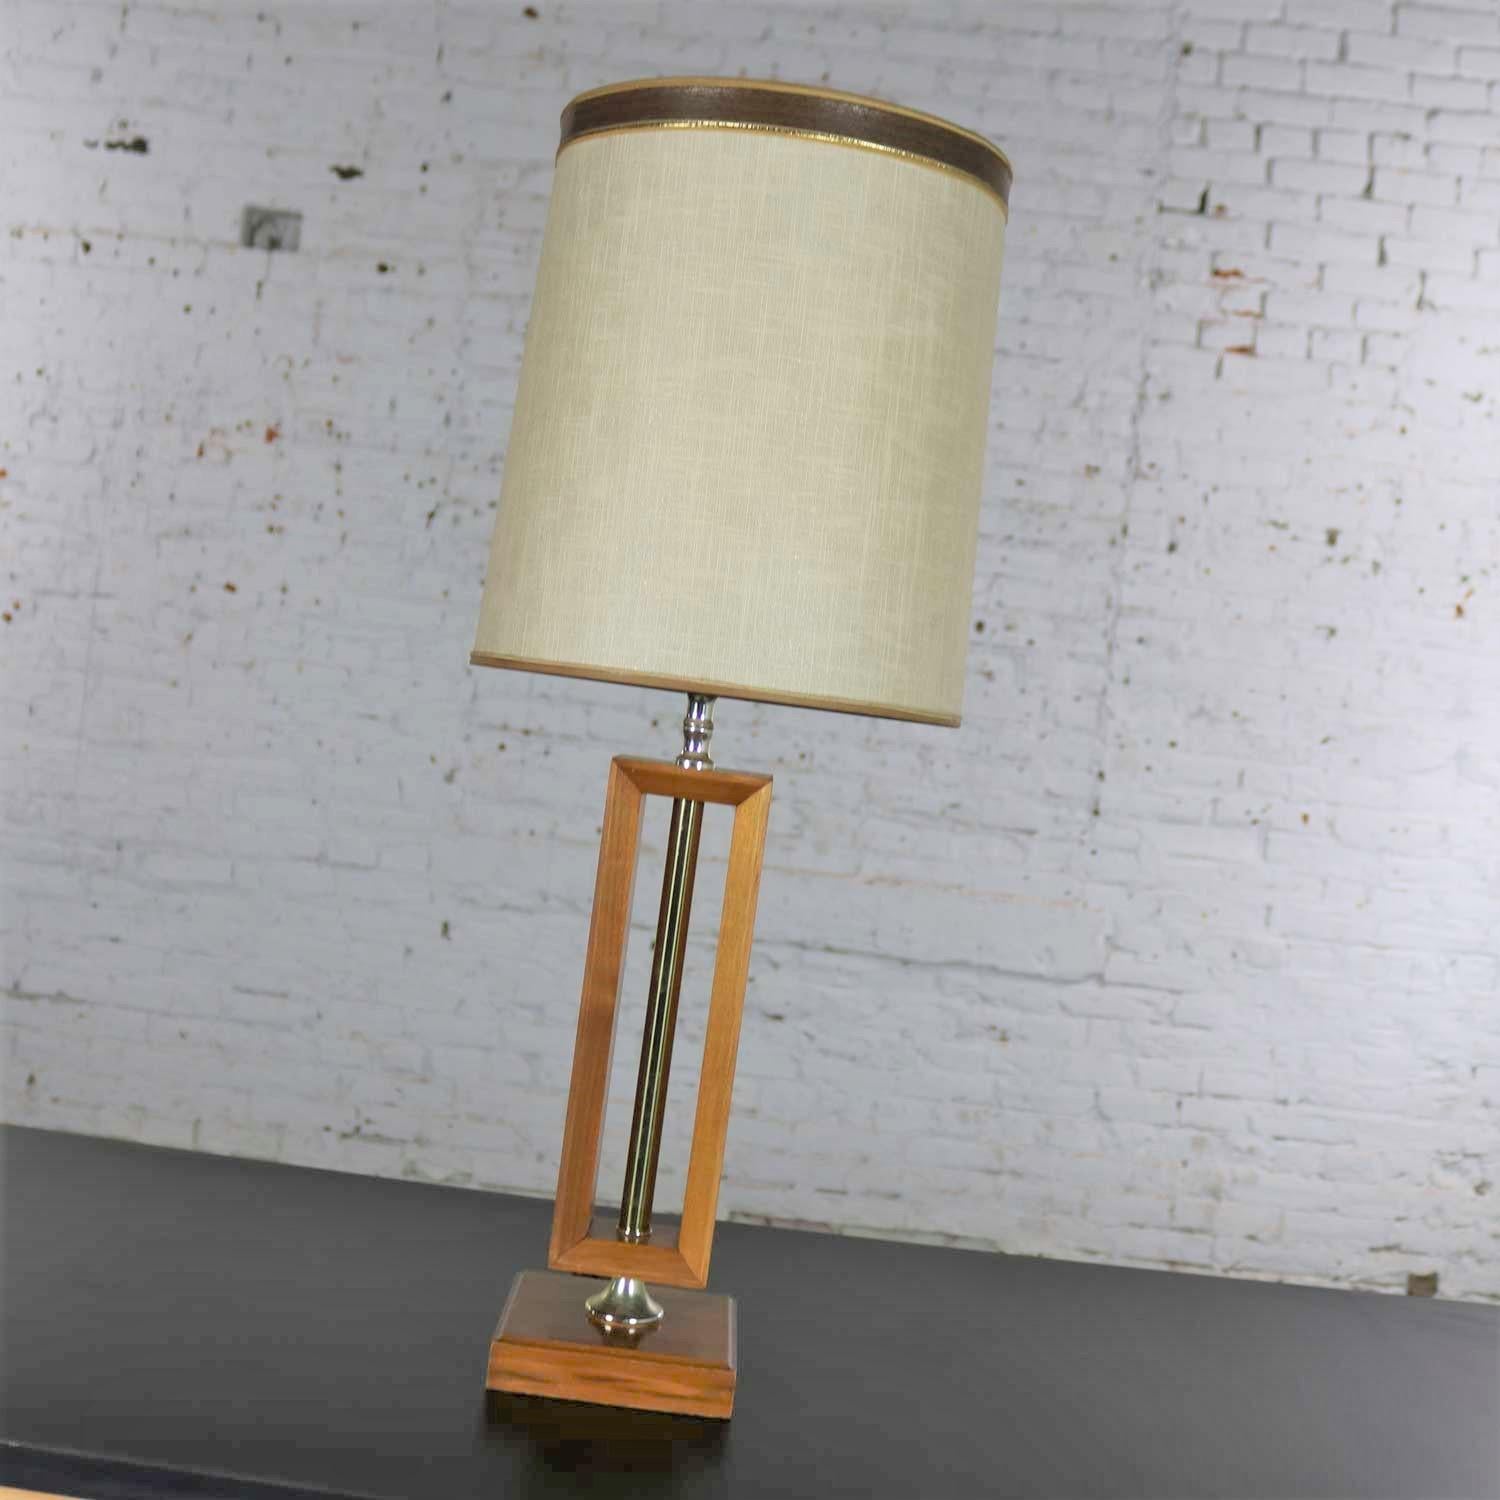 Belle petite lampe moderne du milieu du siècle en noyer avec des détails en laiton dans le style de Laurel Lamp Mfg. Co. Il est en très bon état, ayant été recâblé et doté d'une nouvelle prise. Le noyer et le laiton sont magnifiques, et il a